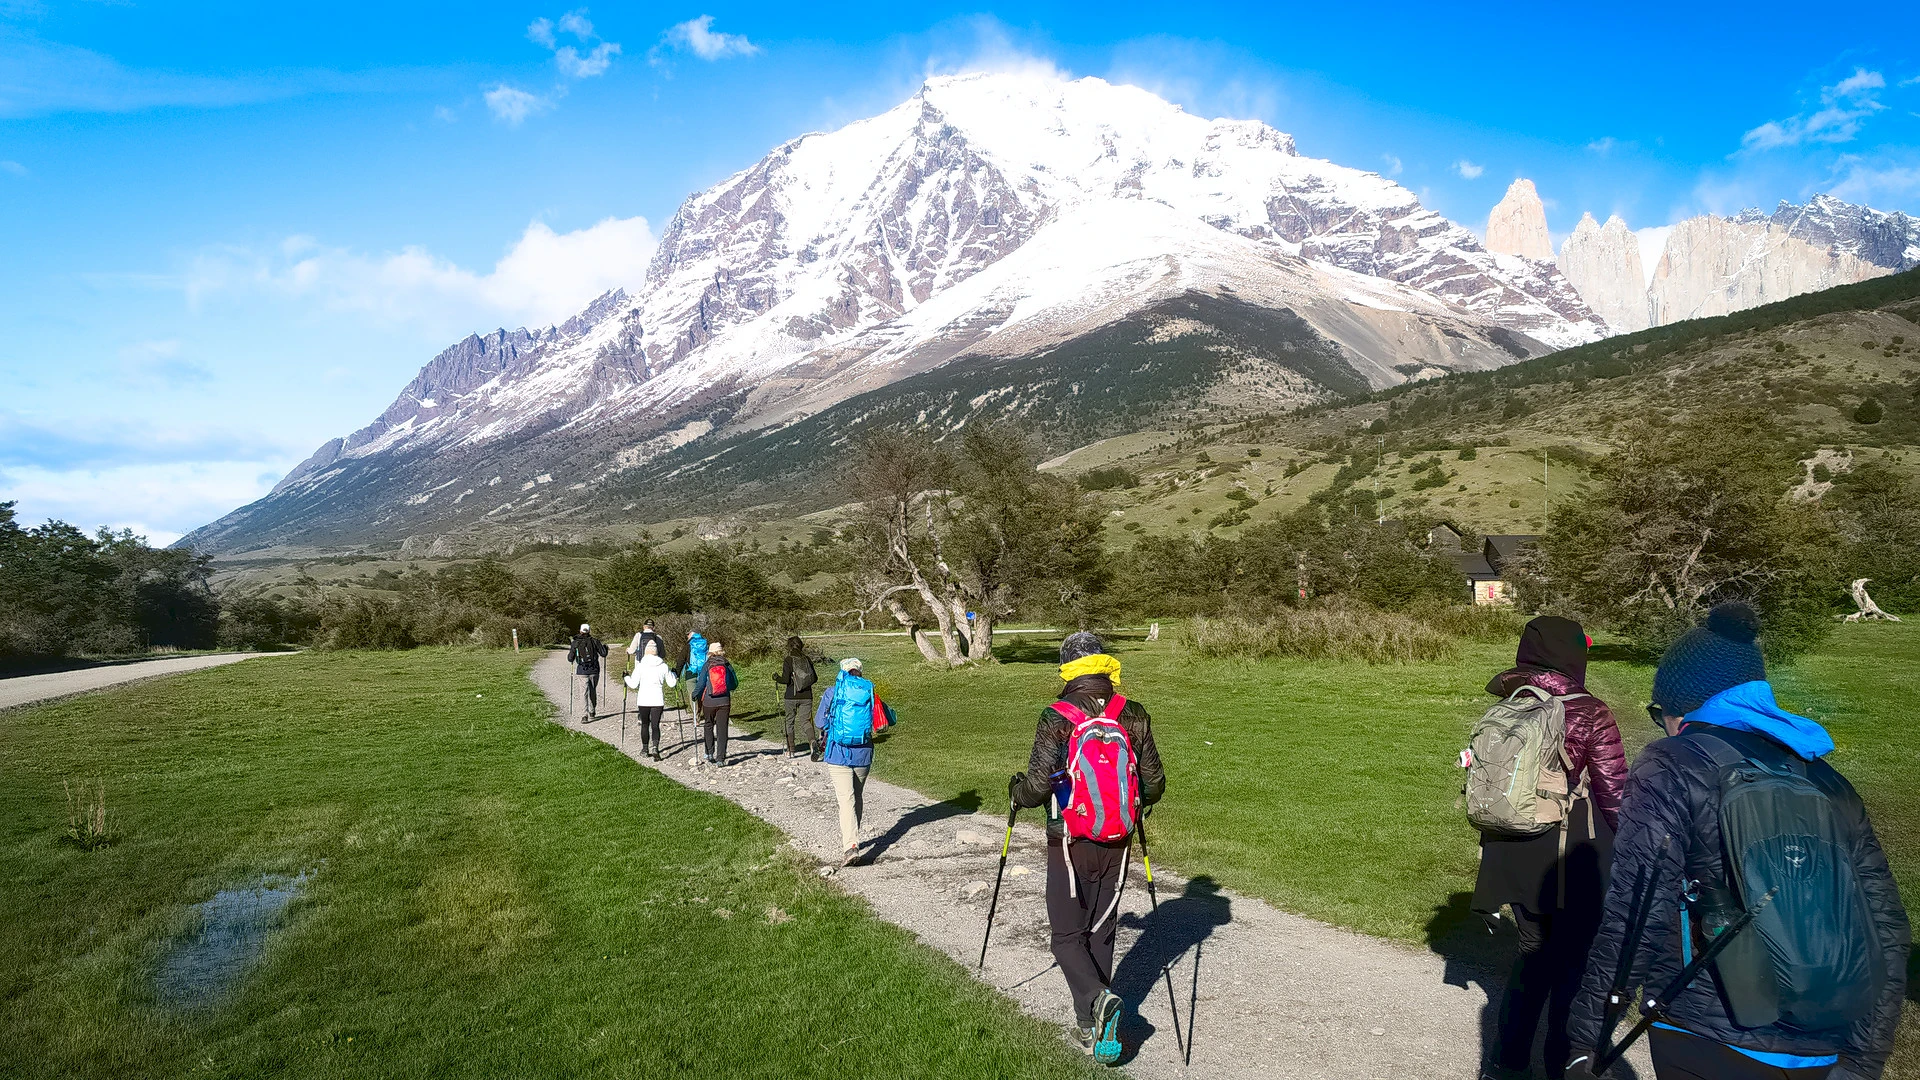 Trekking in Torres del Paine National Park